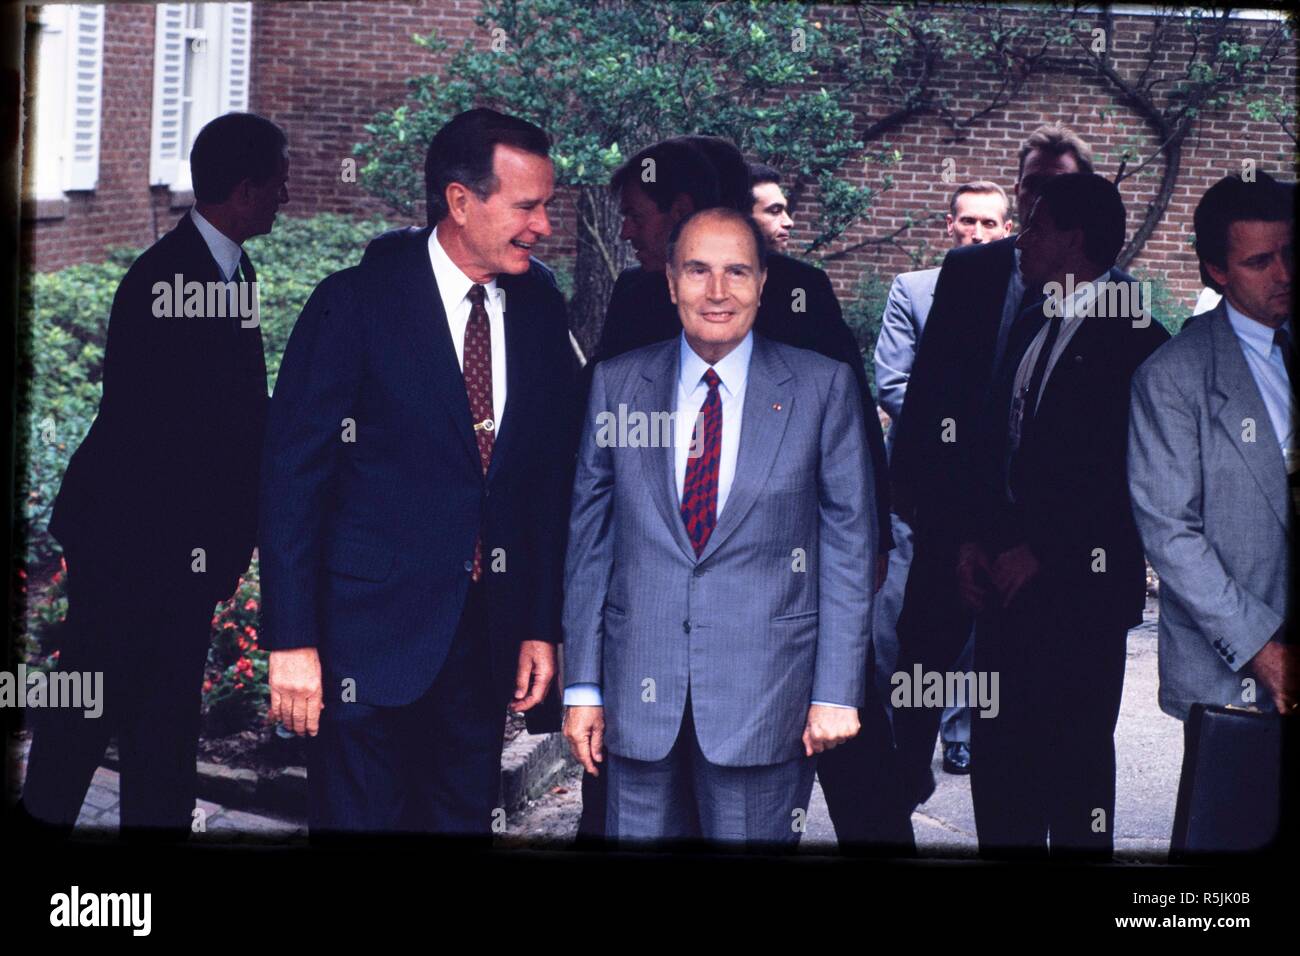 Datei Juli 1990: Präsident George H.W. Bush auf dem Wirtschaftsgipfel Houston in Houston, TX mit französischen Präsidenten François Mitterrand. Präsident George H.W. Bush weg geführt, Nov. 30, 2018 in Houston, TX. Stockfoto